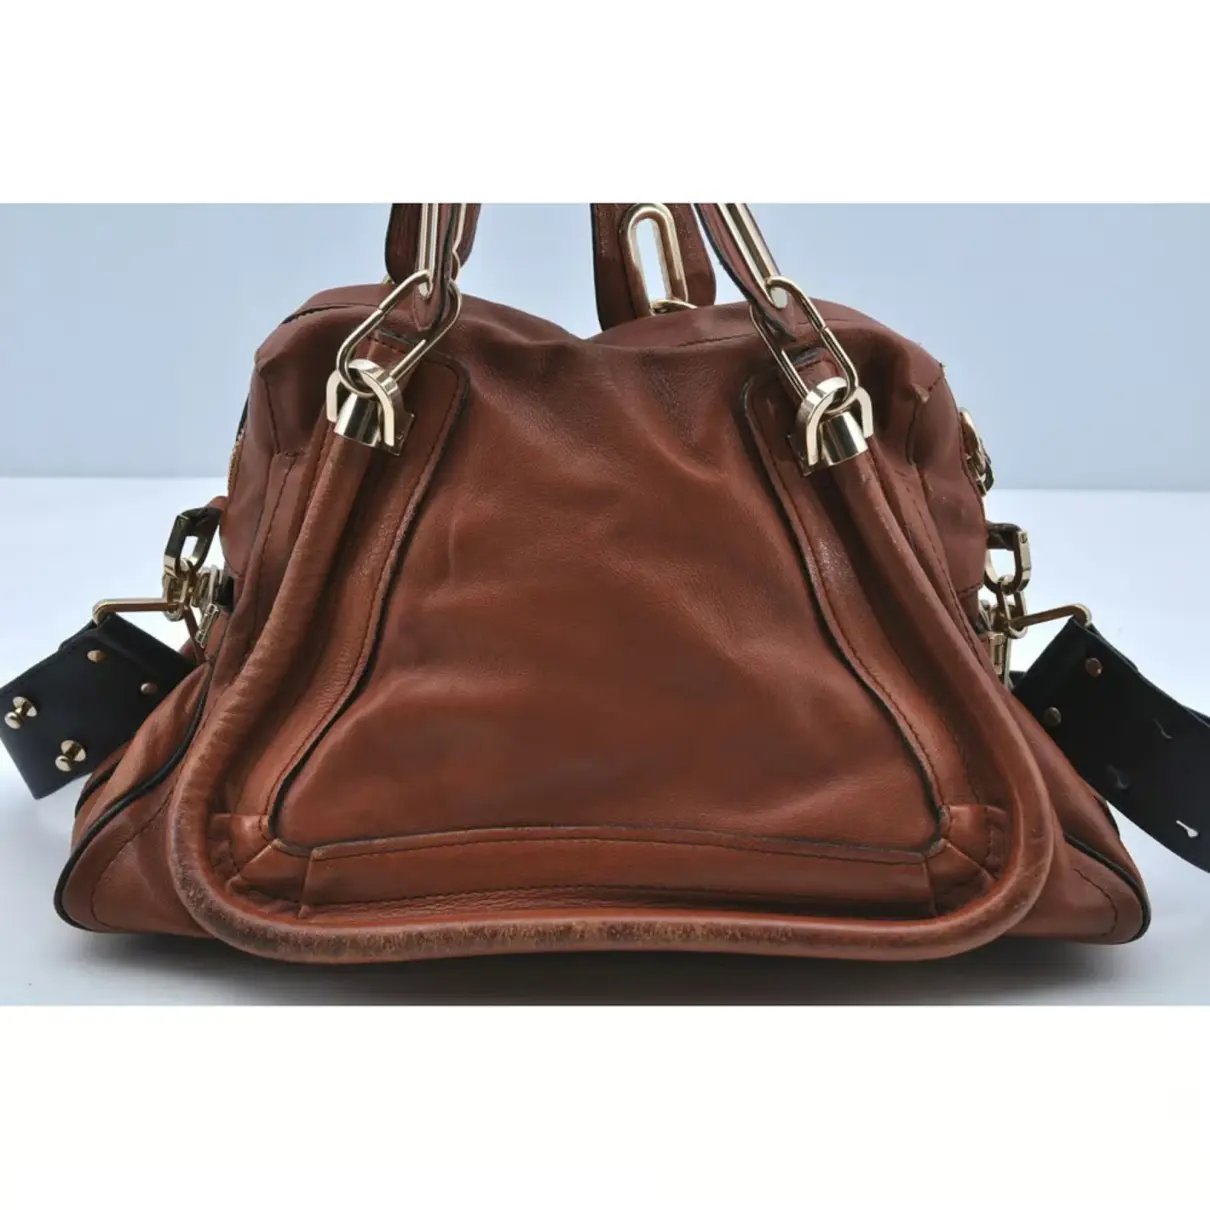 Buy Chloé Paraty leather satchel online